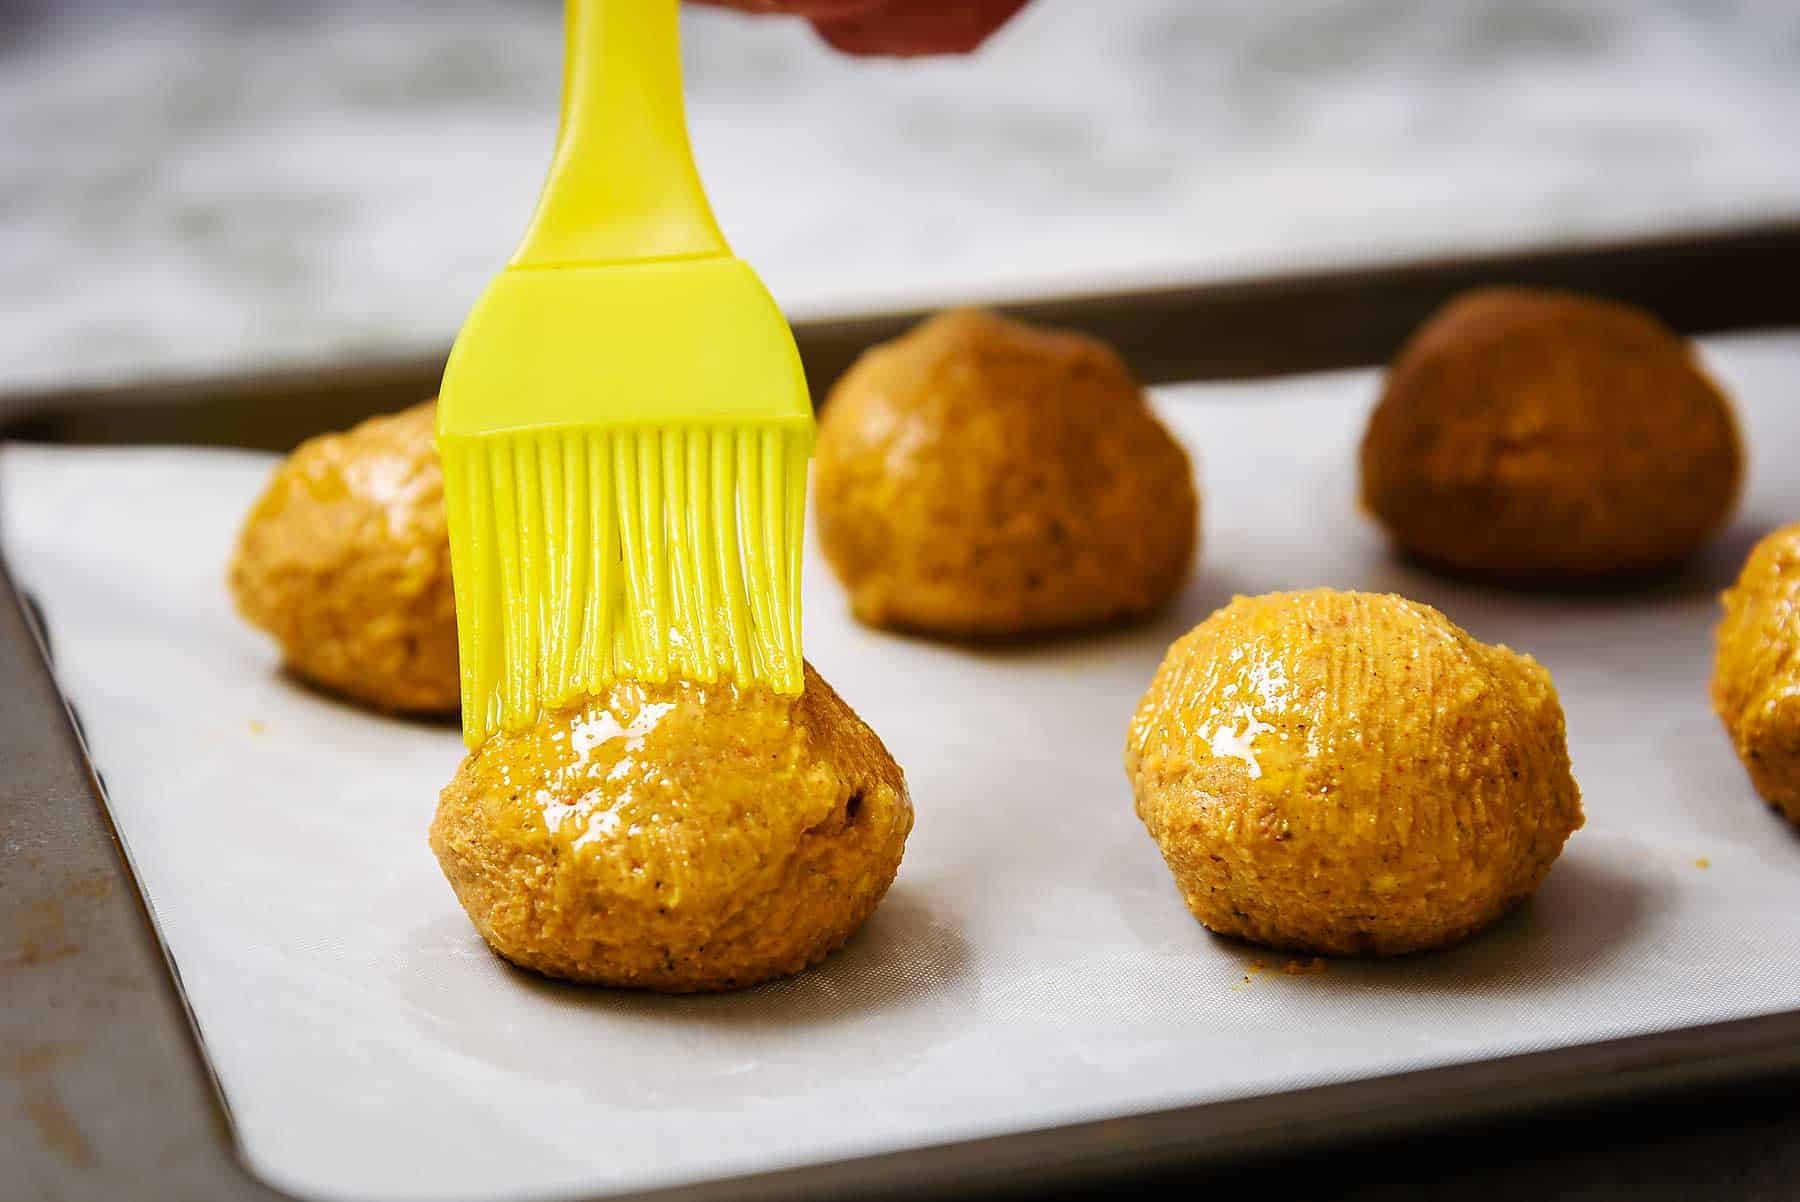 Brushing falafel balls with oil